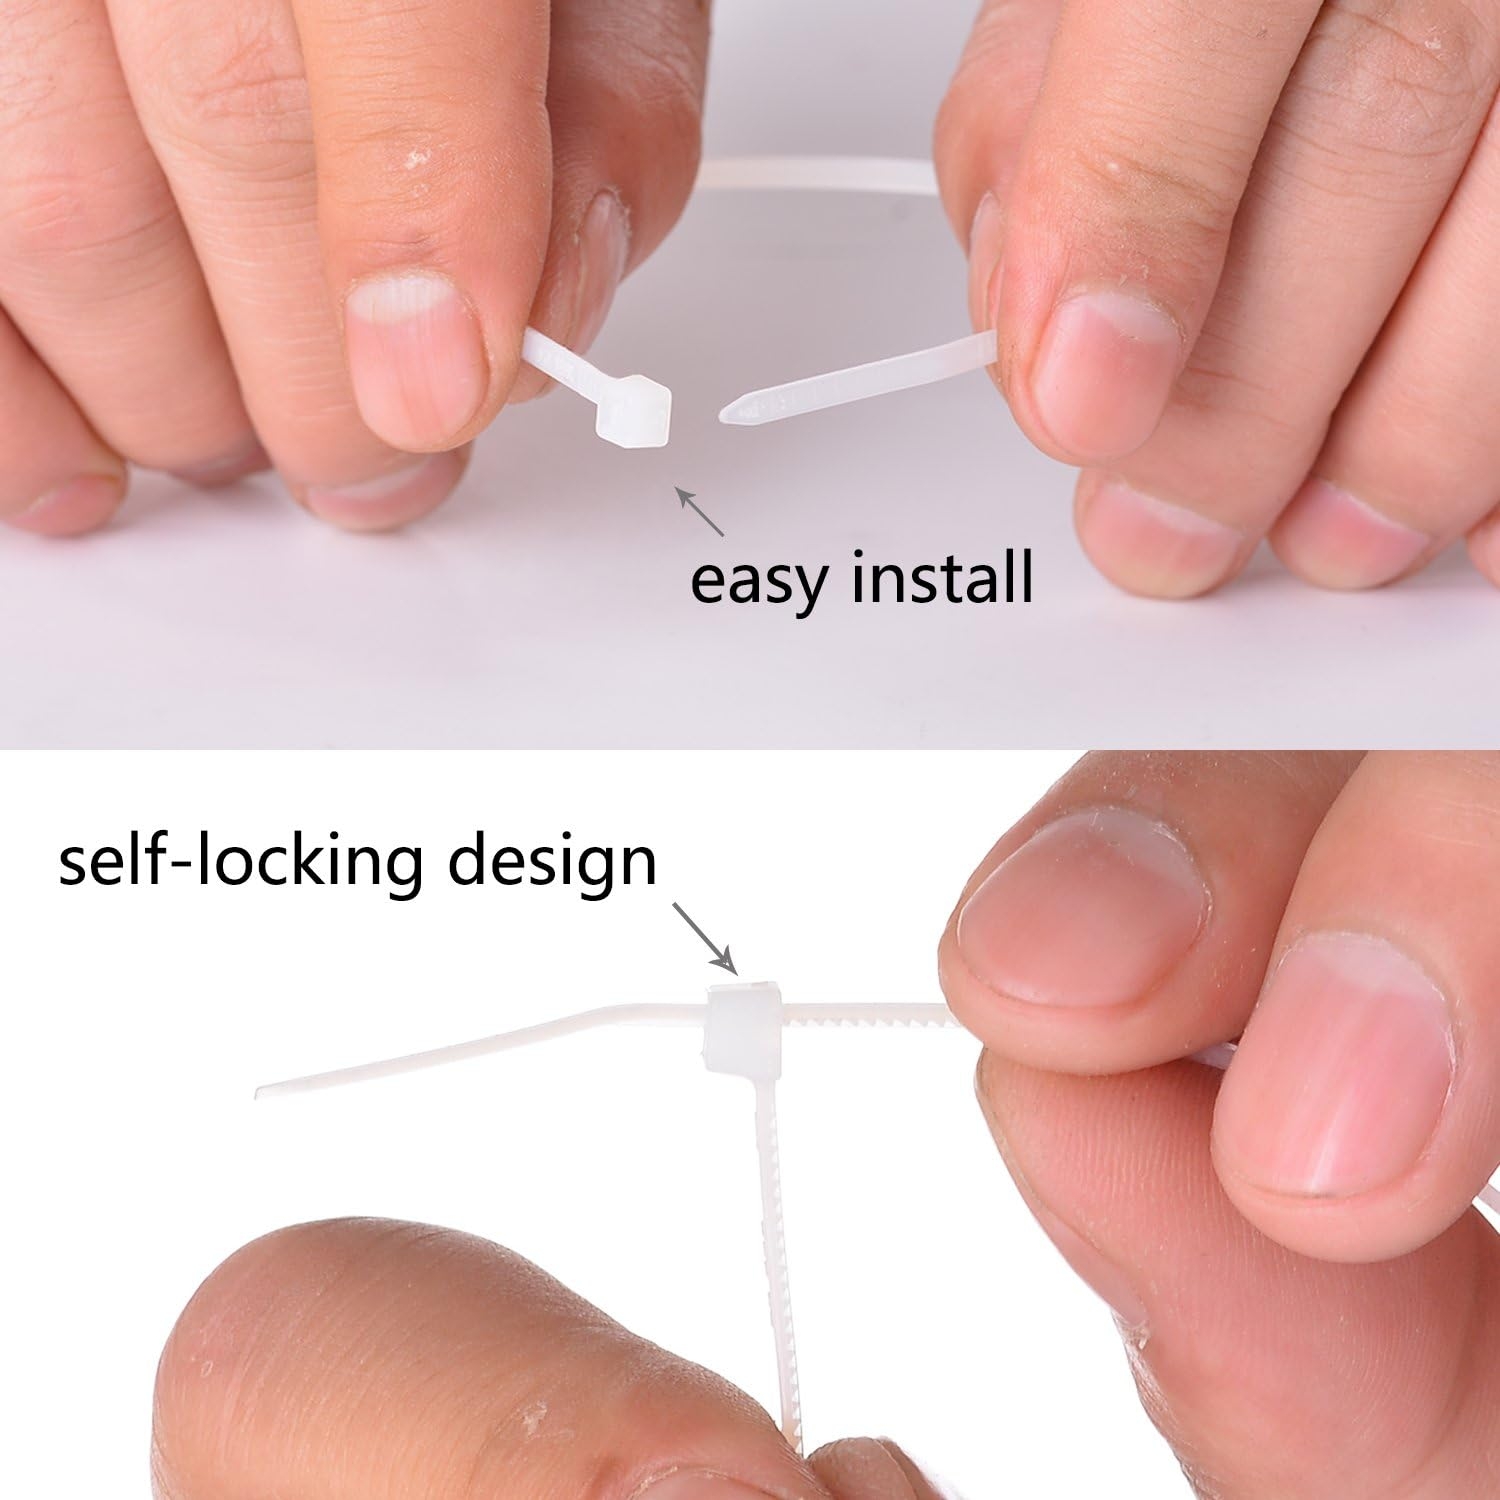 Multi-Purpose Nylon Zip Ties - (100 Piece) 8 Inch Self Locking Cable Ties. White